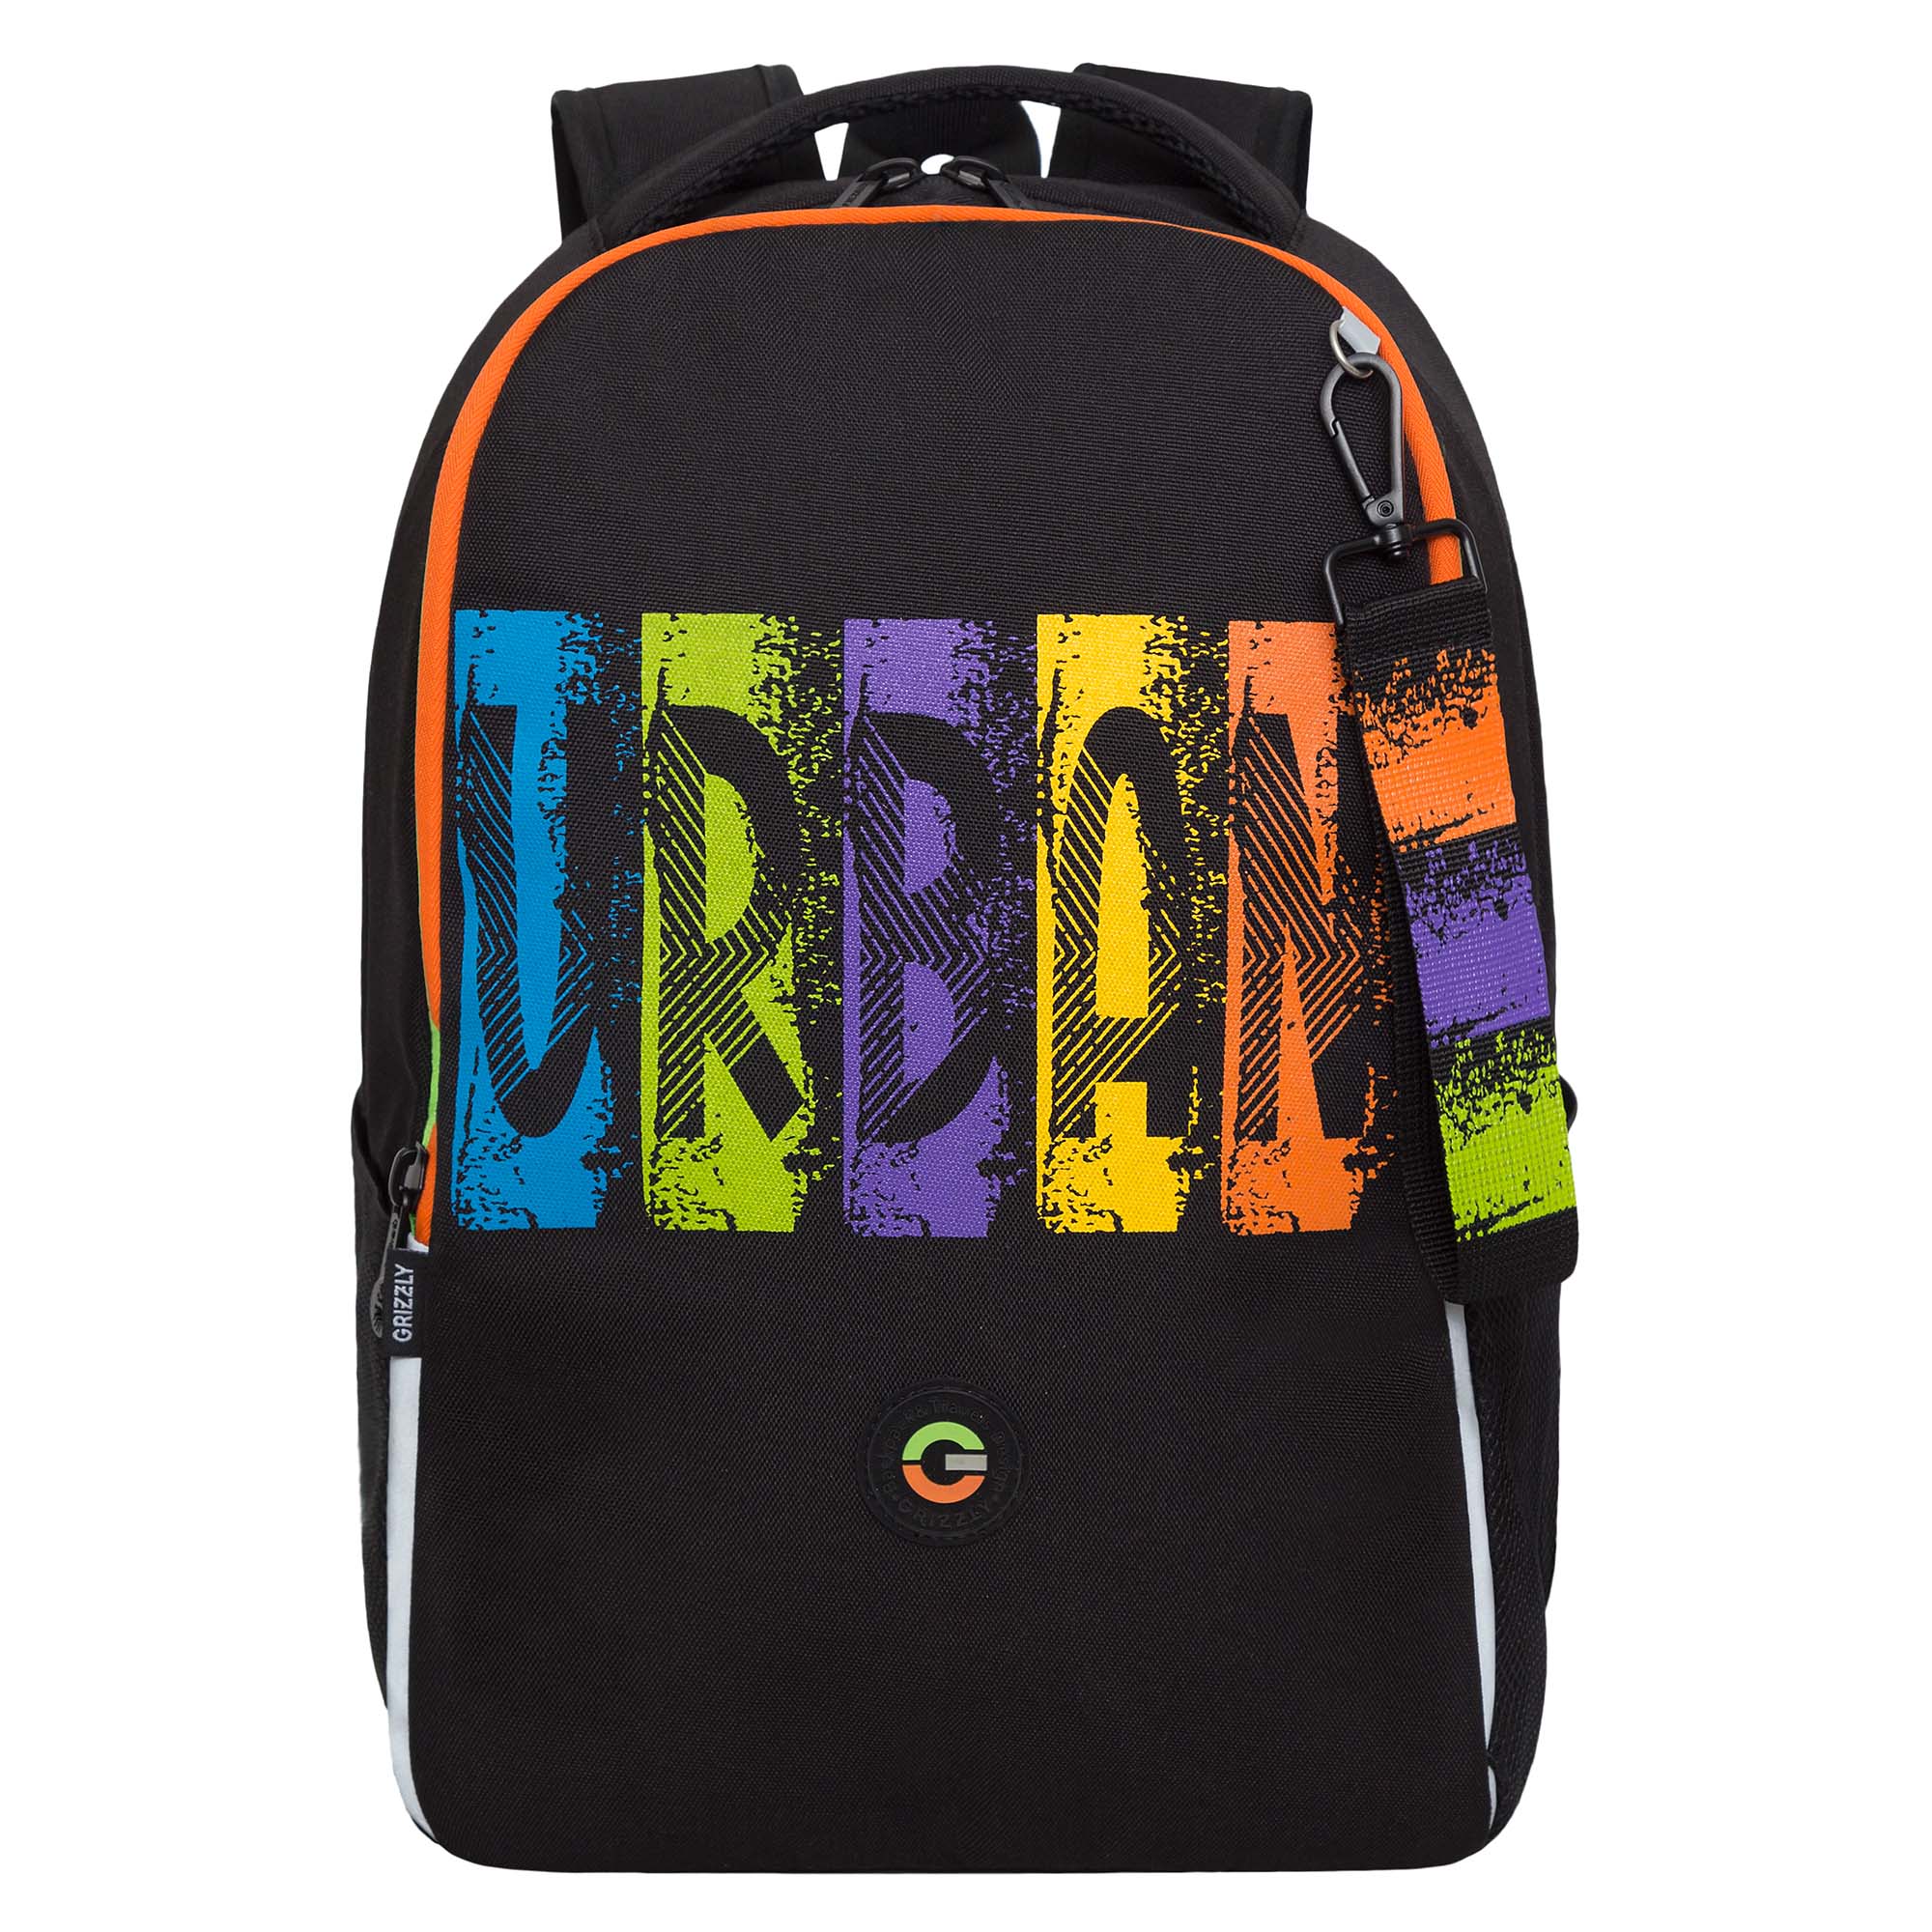 Рюкзак школьный GRIZZLY легкий с жесткой спинкой, 2 отделения, черный, RB-451-3/1 рюкзак школьный grizzly с карманом для ноутбука 13 2 отделения для девочки rg 466 2 2